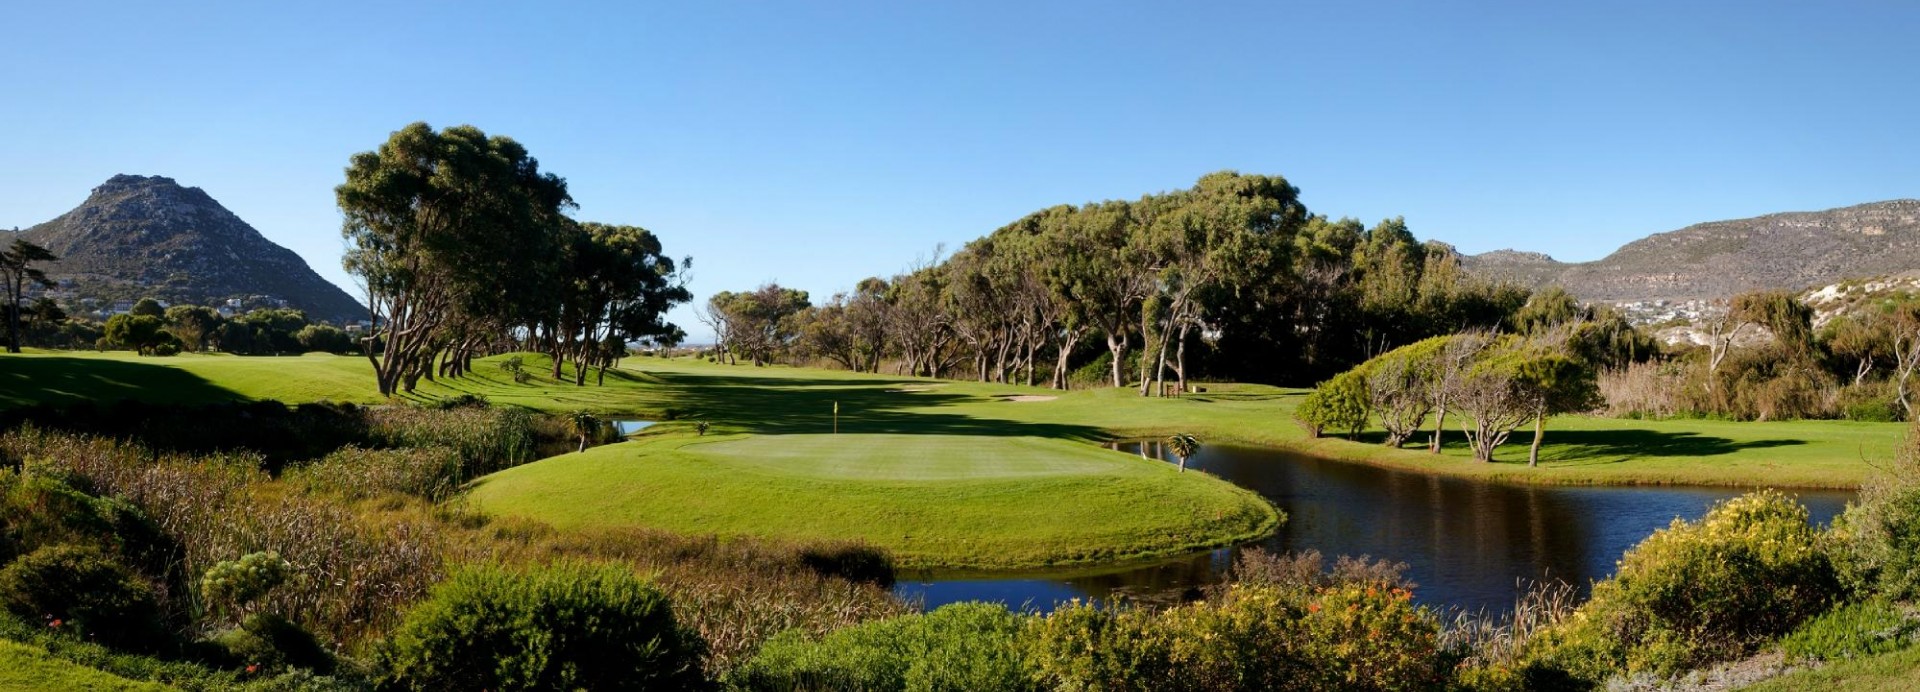 Clovelly Golf Course  | Golfové zájezdy, golfová dovolená, luxusní golf